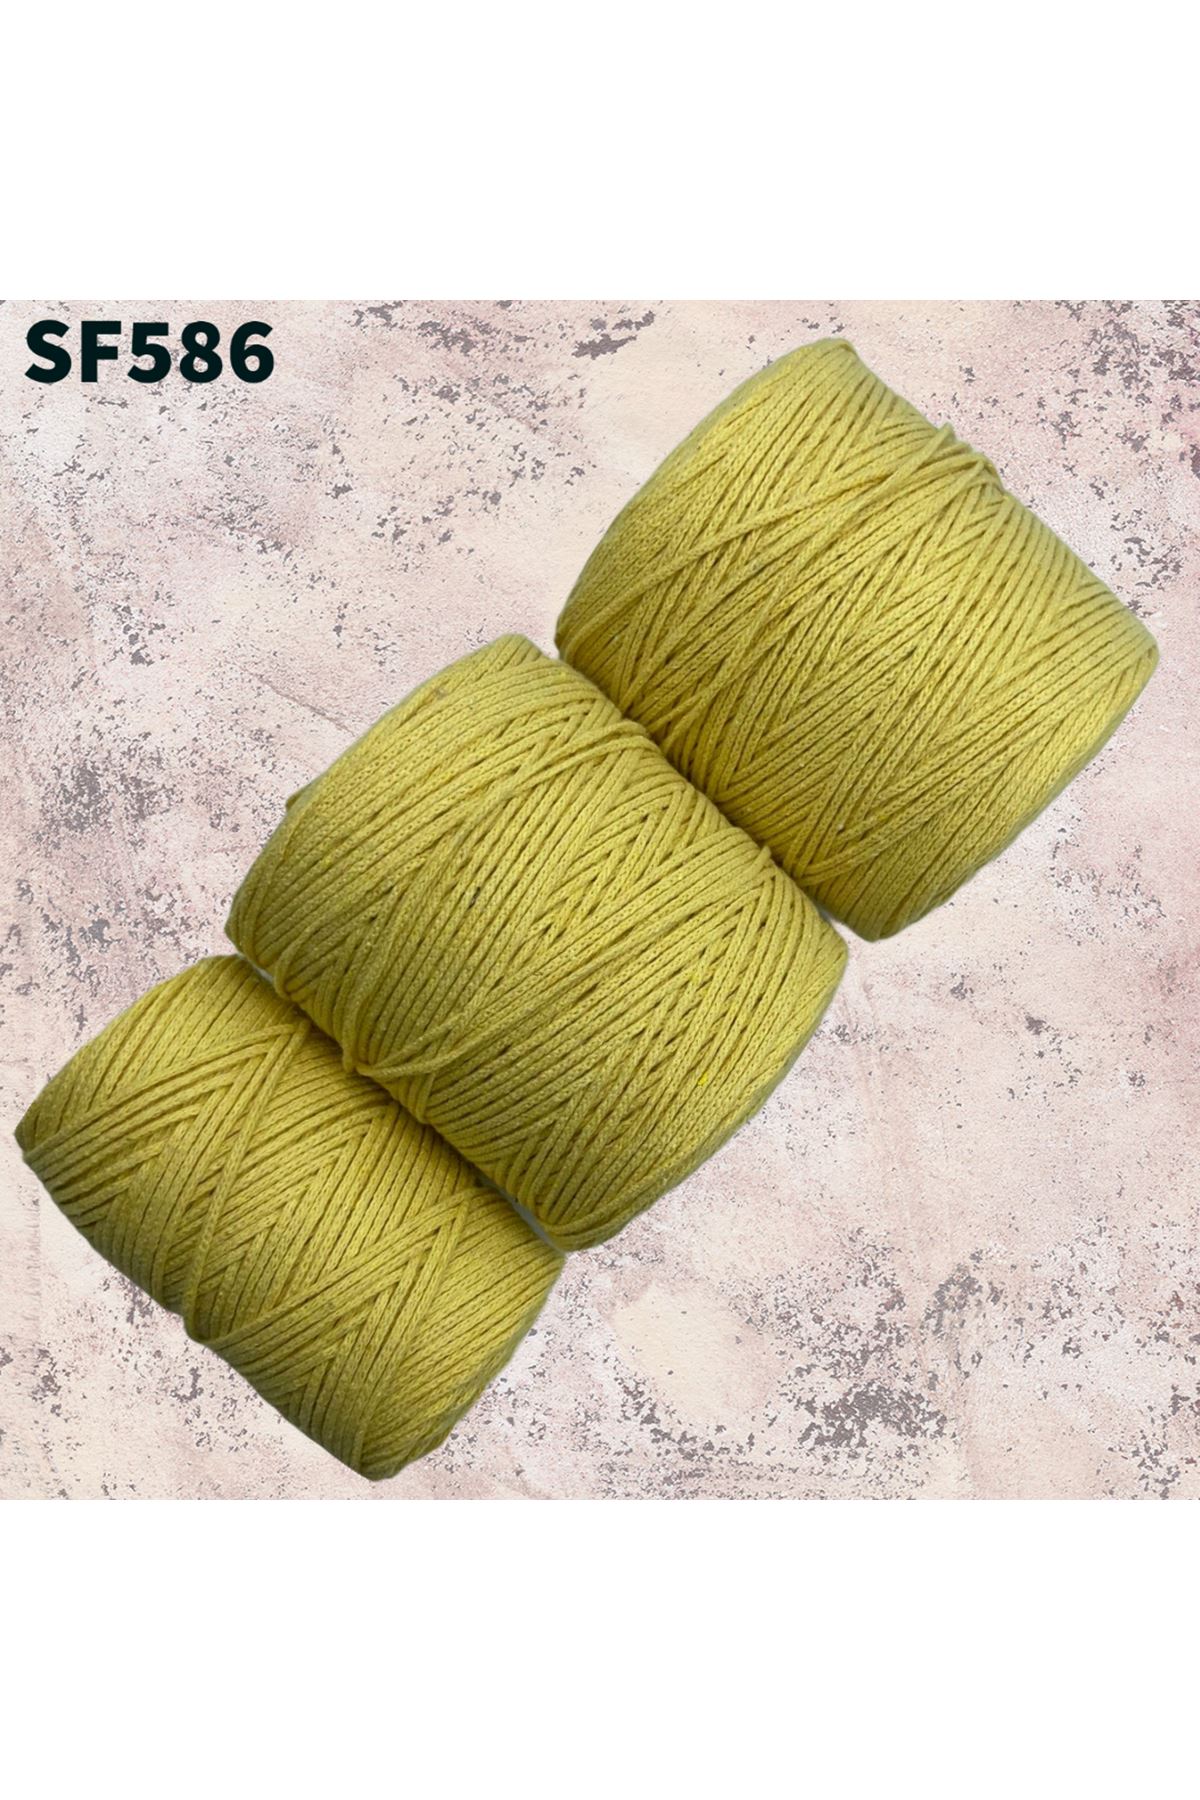 Stok Fazlası Cotton Makrome Sarı 1000 Gram SF586